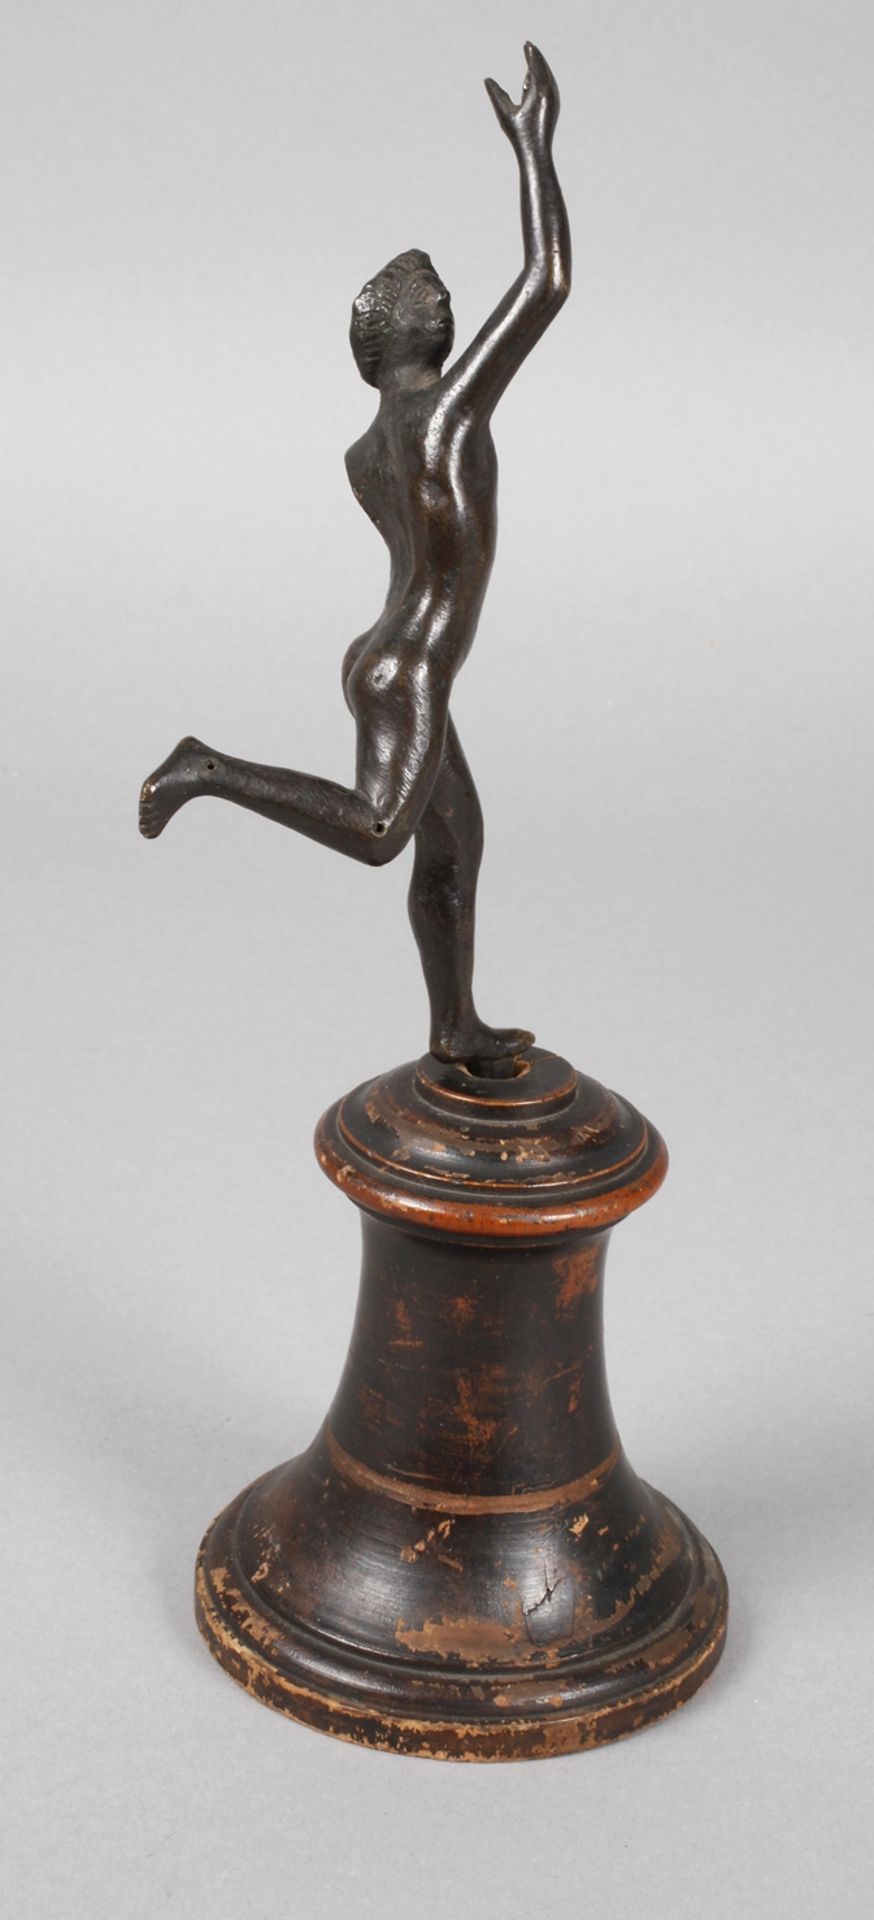 Hermes 17./18. Jh.unsigniert, Bronze dunkel patiniert, laufender Hermes als Akt, ein Arm fehlt